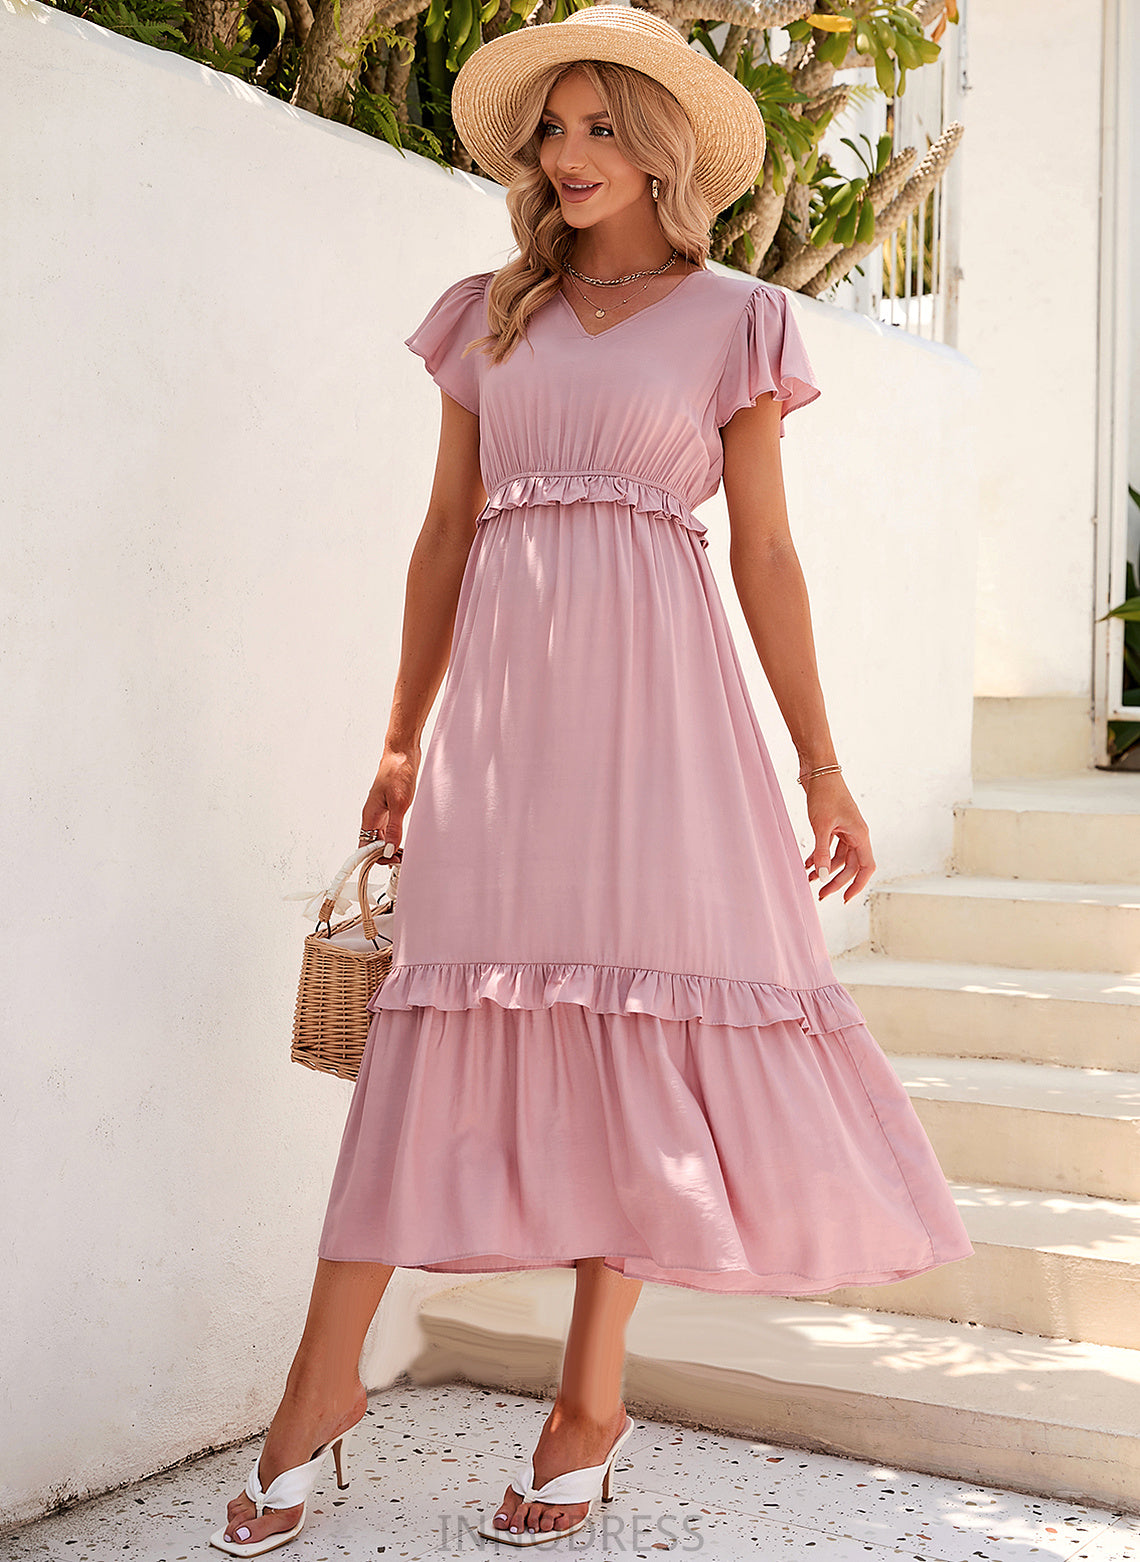 Fabric Length V-neck Polyester Tea-Length Neckline Straps Silhouette A-Line Perla A-Line/Princess Short Sleeves Bridesmaid Dresses